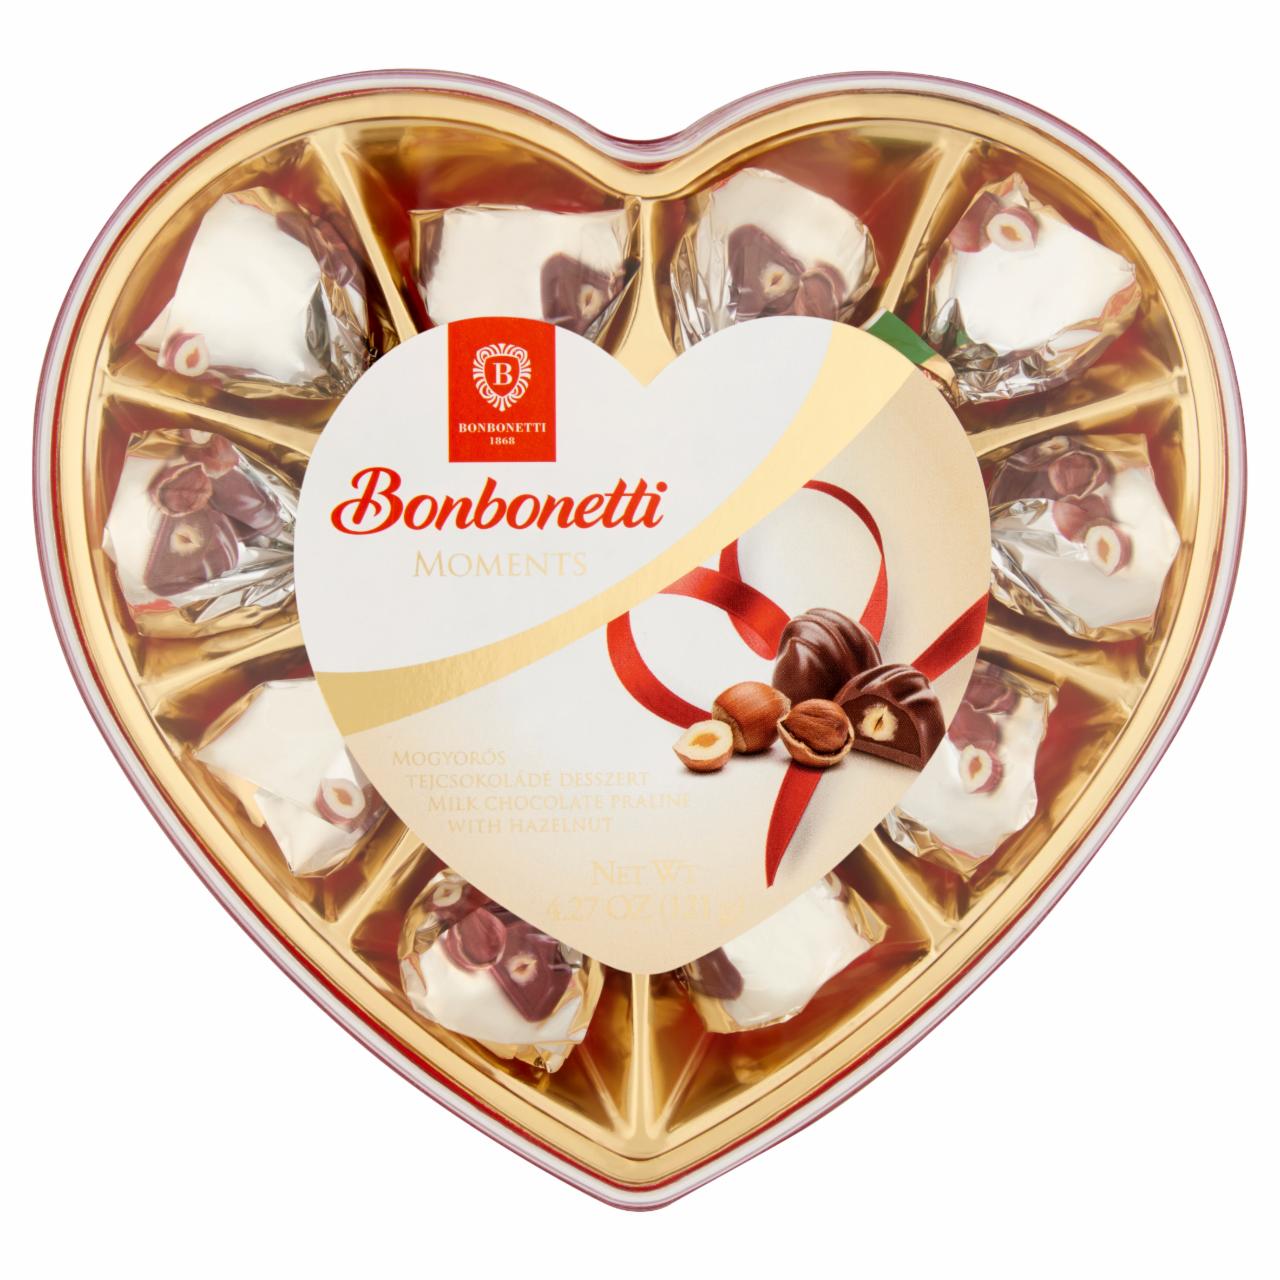 Képek - Bonbonetti Moments mogyorós tejcsokoládé desszert 121 g